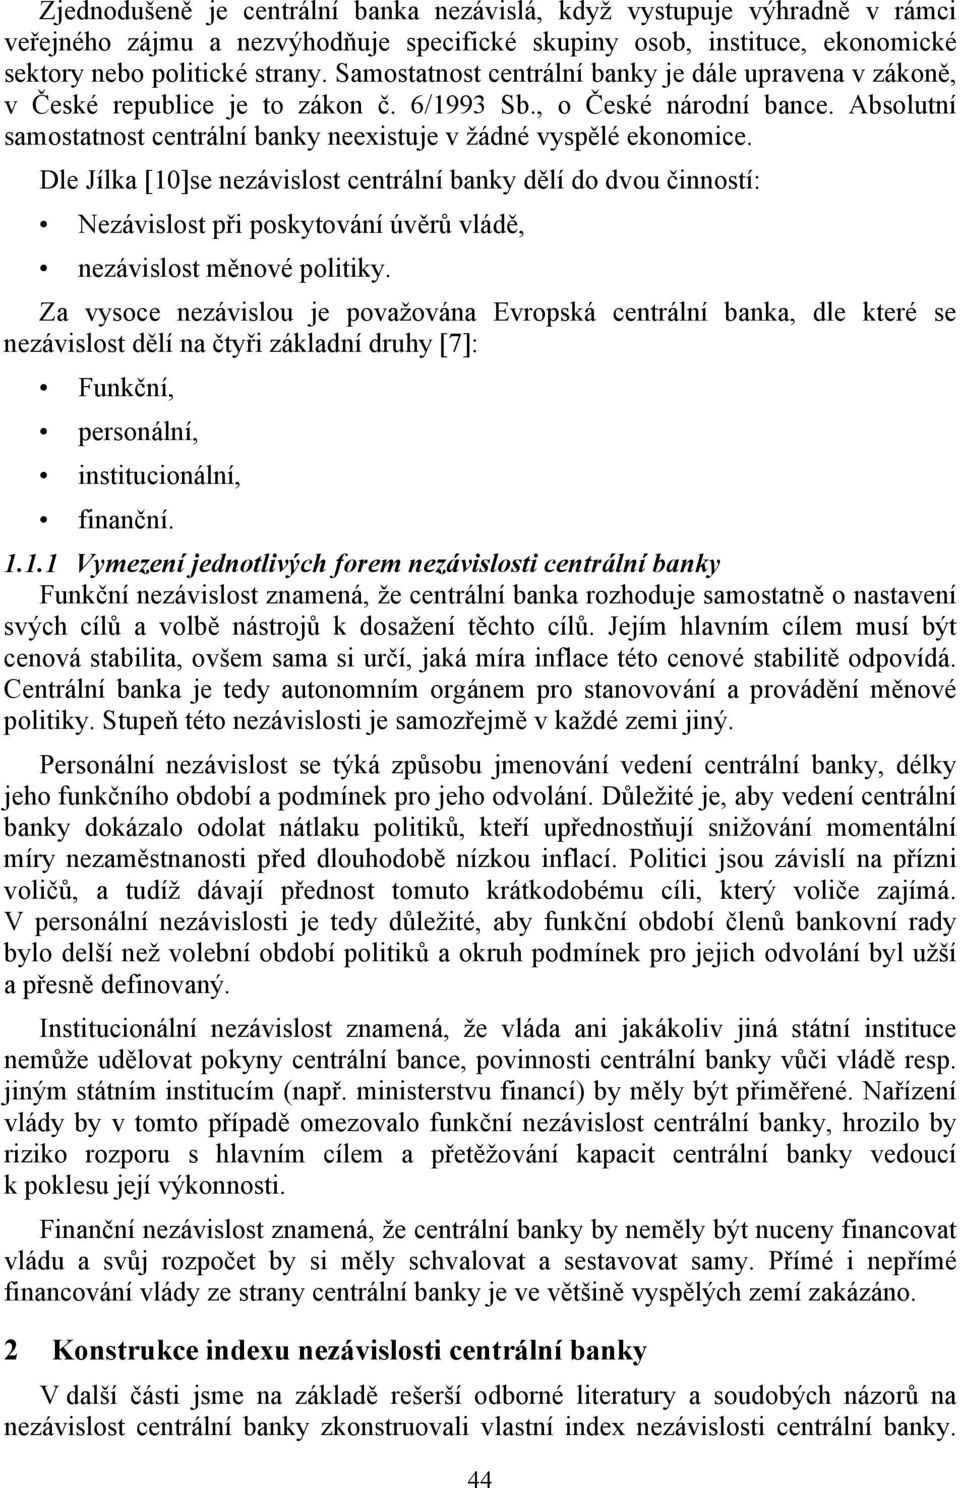 Dle Jílka [0]se nezávislost centrální banky dělí do dvou činností: Nezávislost při poskytování úvěrů vládě, nezávislost měnové politiky.